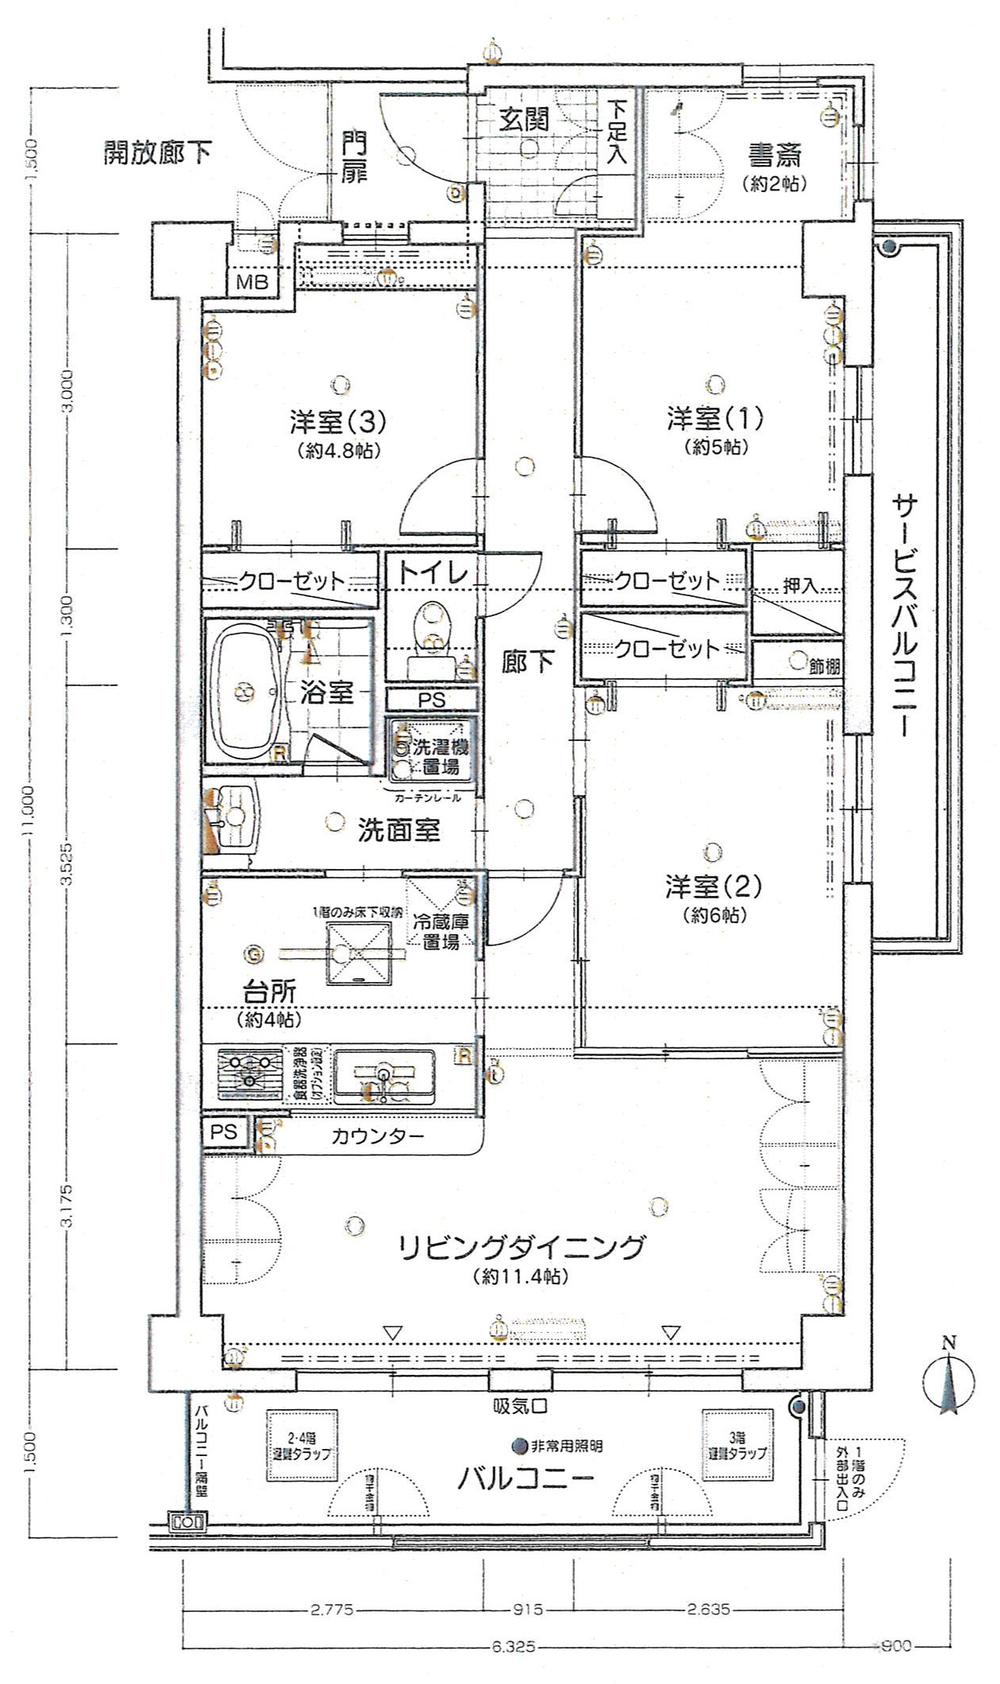 Floor plan. 3LDK + S (storeroom), Price 15.8 million yen, Occupied area 74.97 sq m , Balcony area 17.27 sq m floor plan